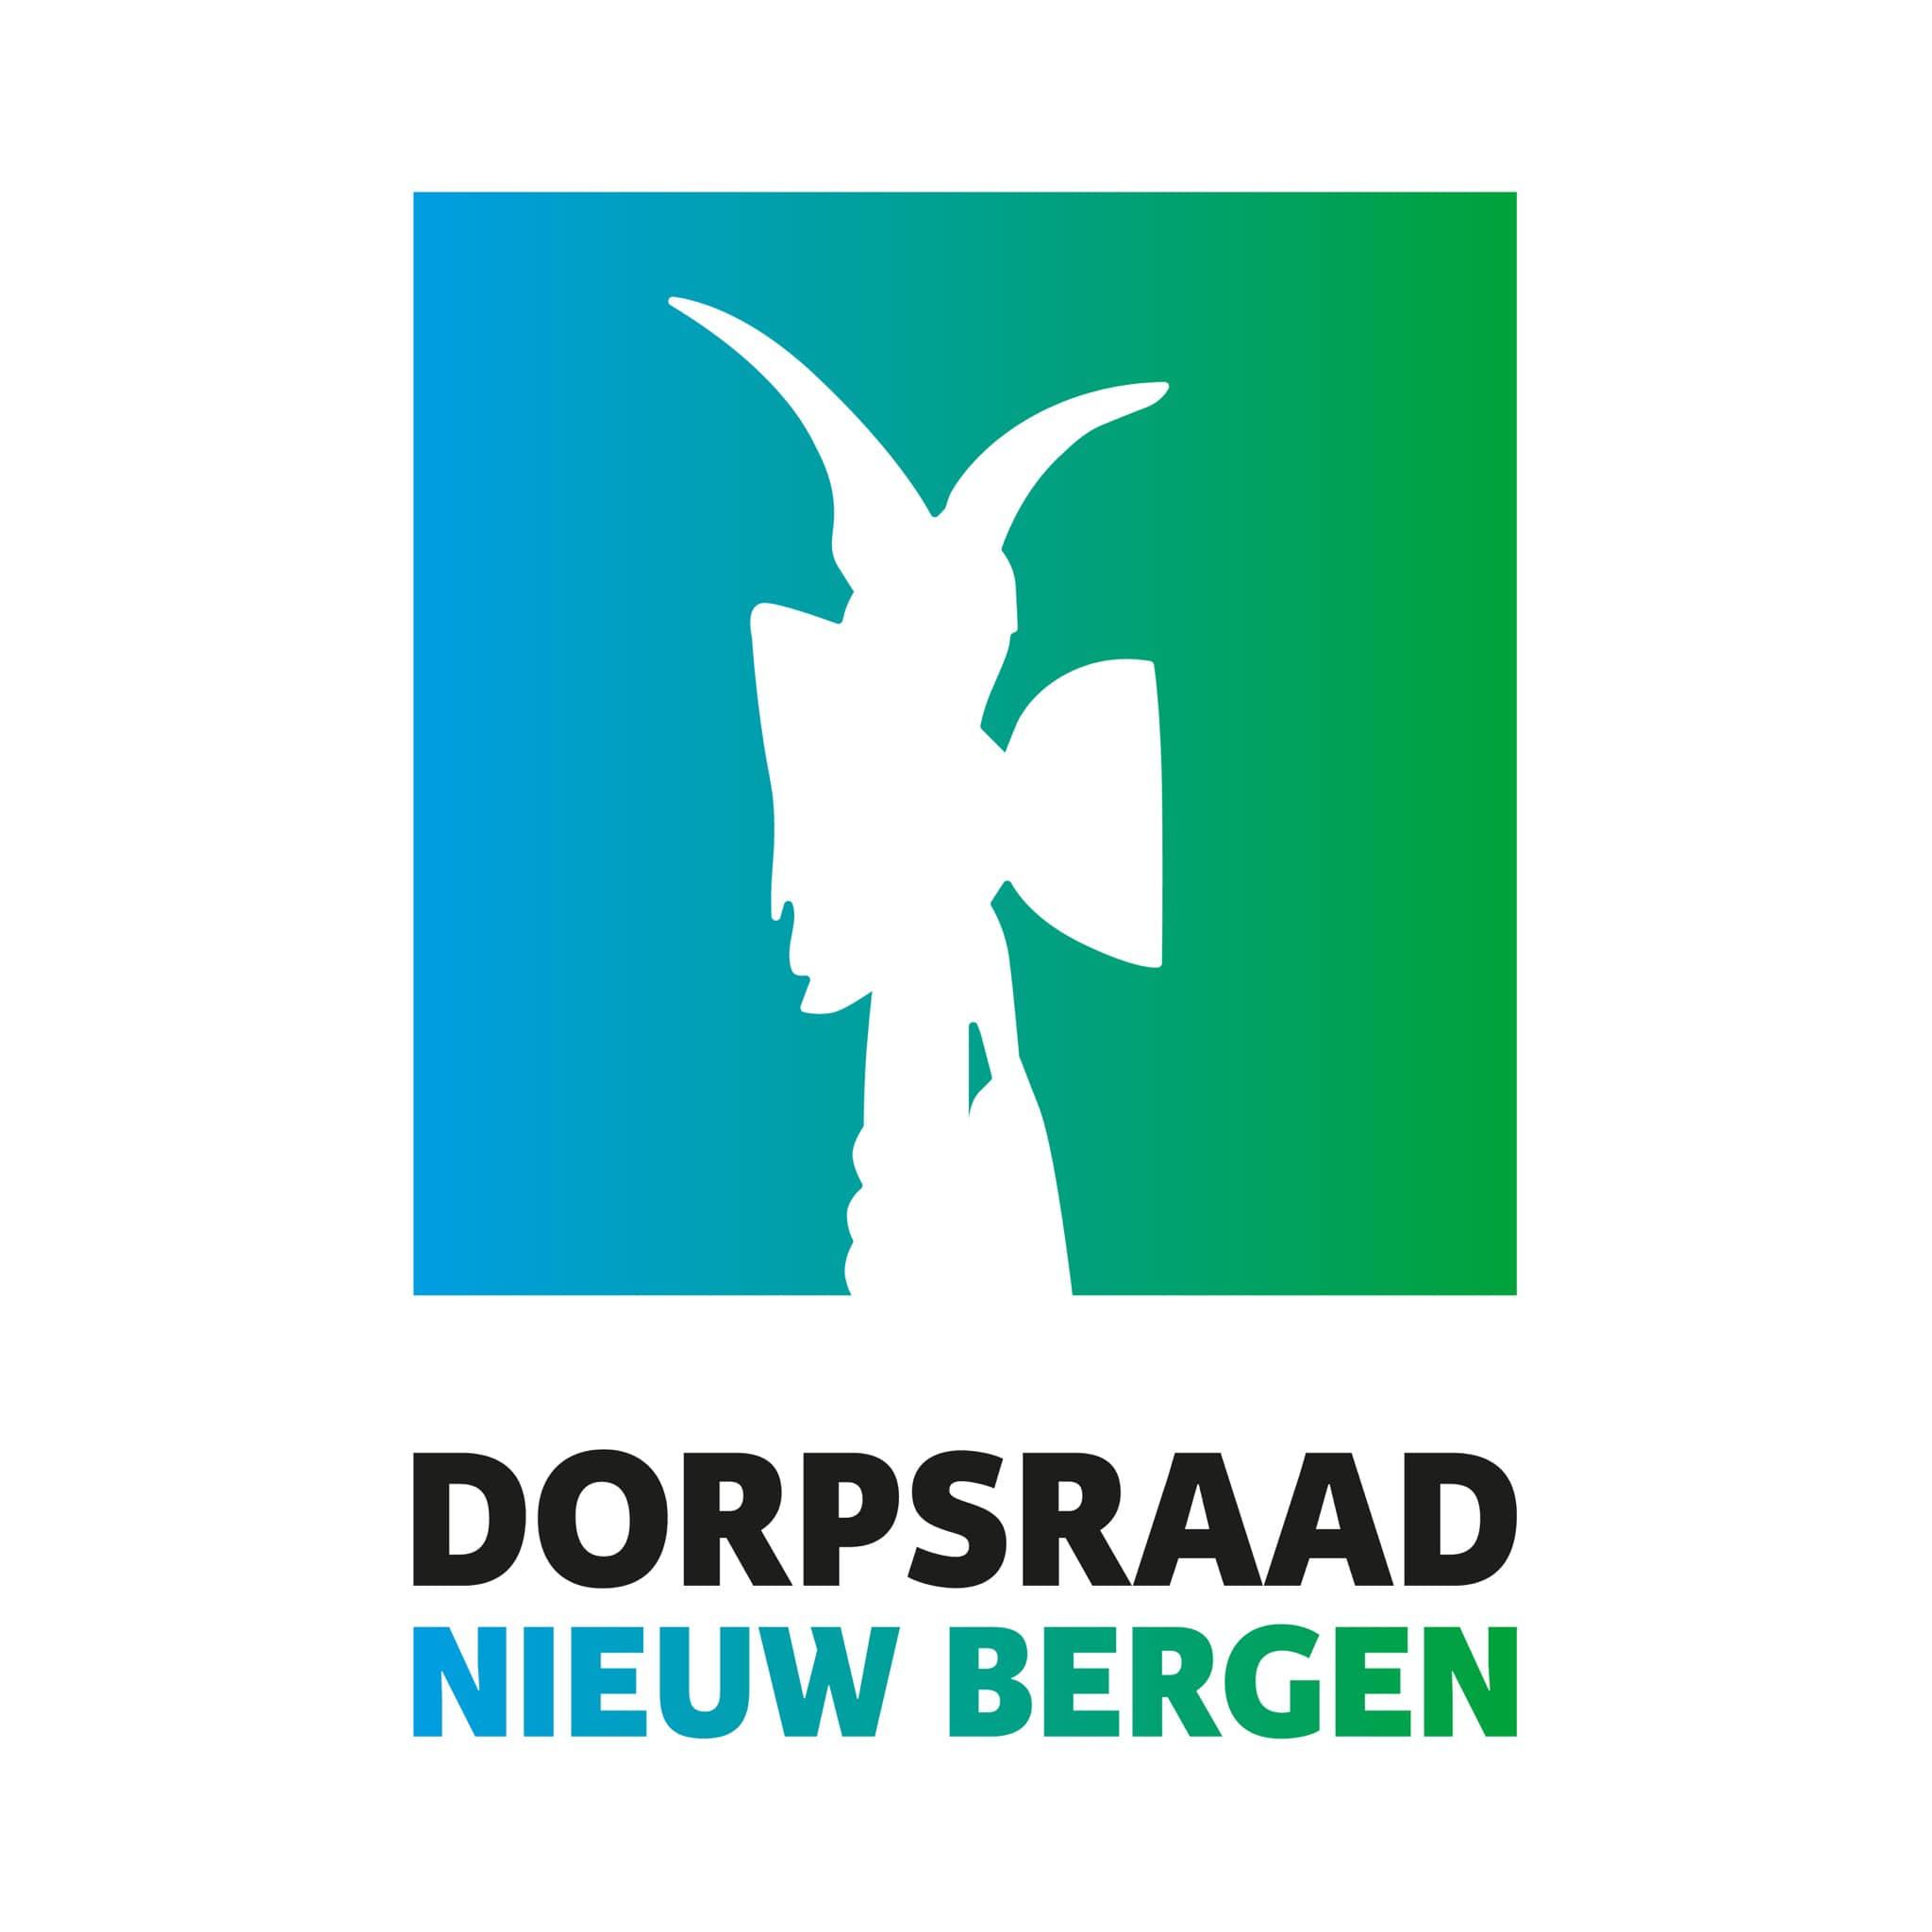 Dorpsraad Nieuw Bergen